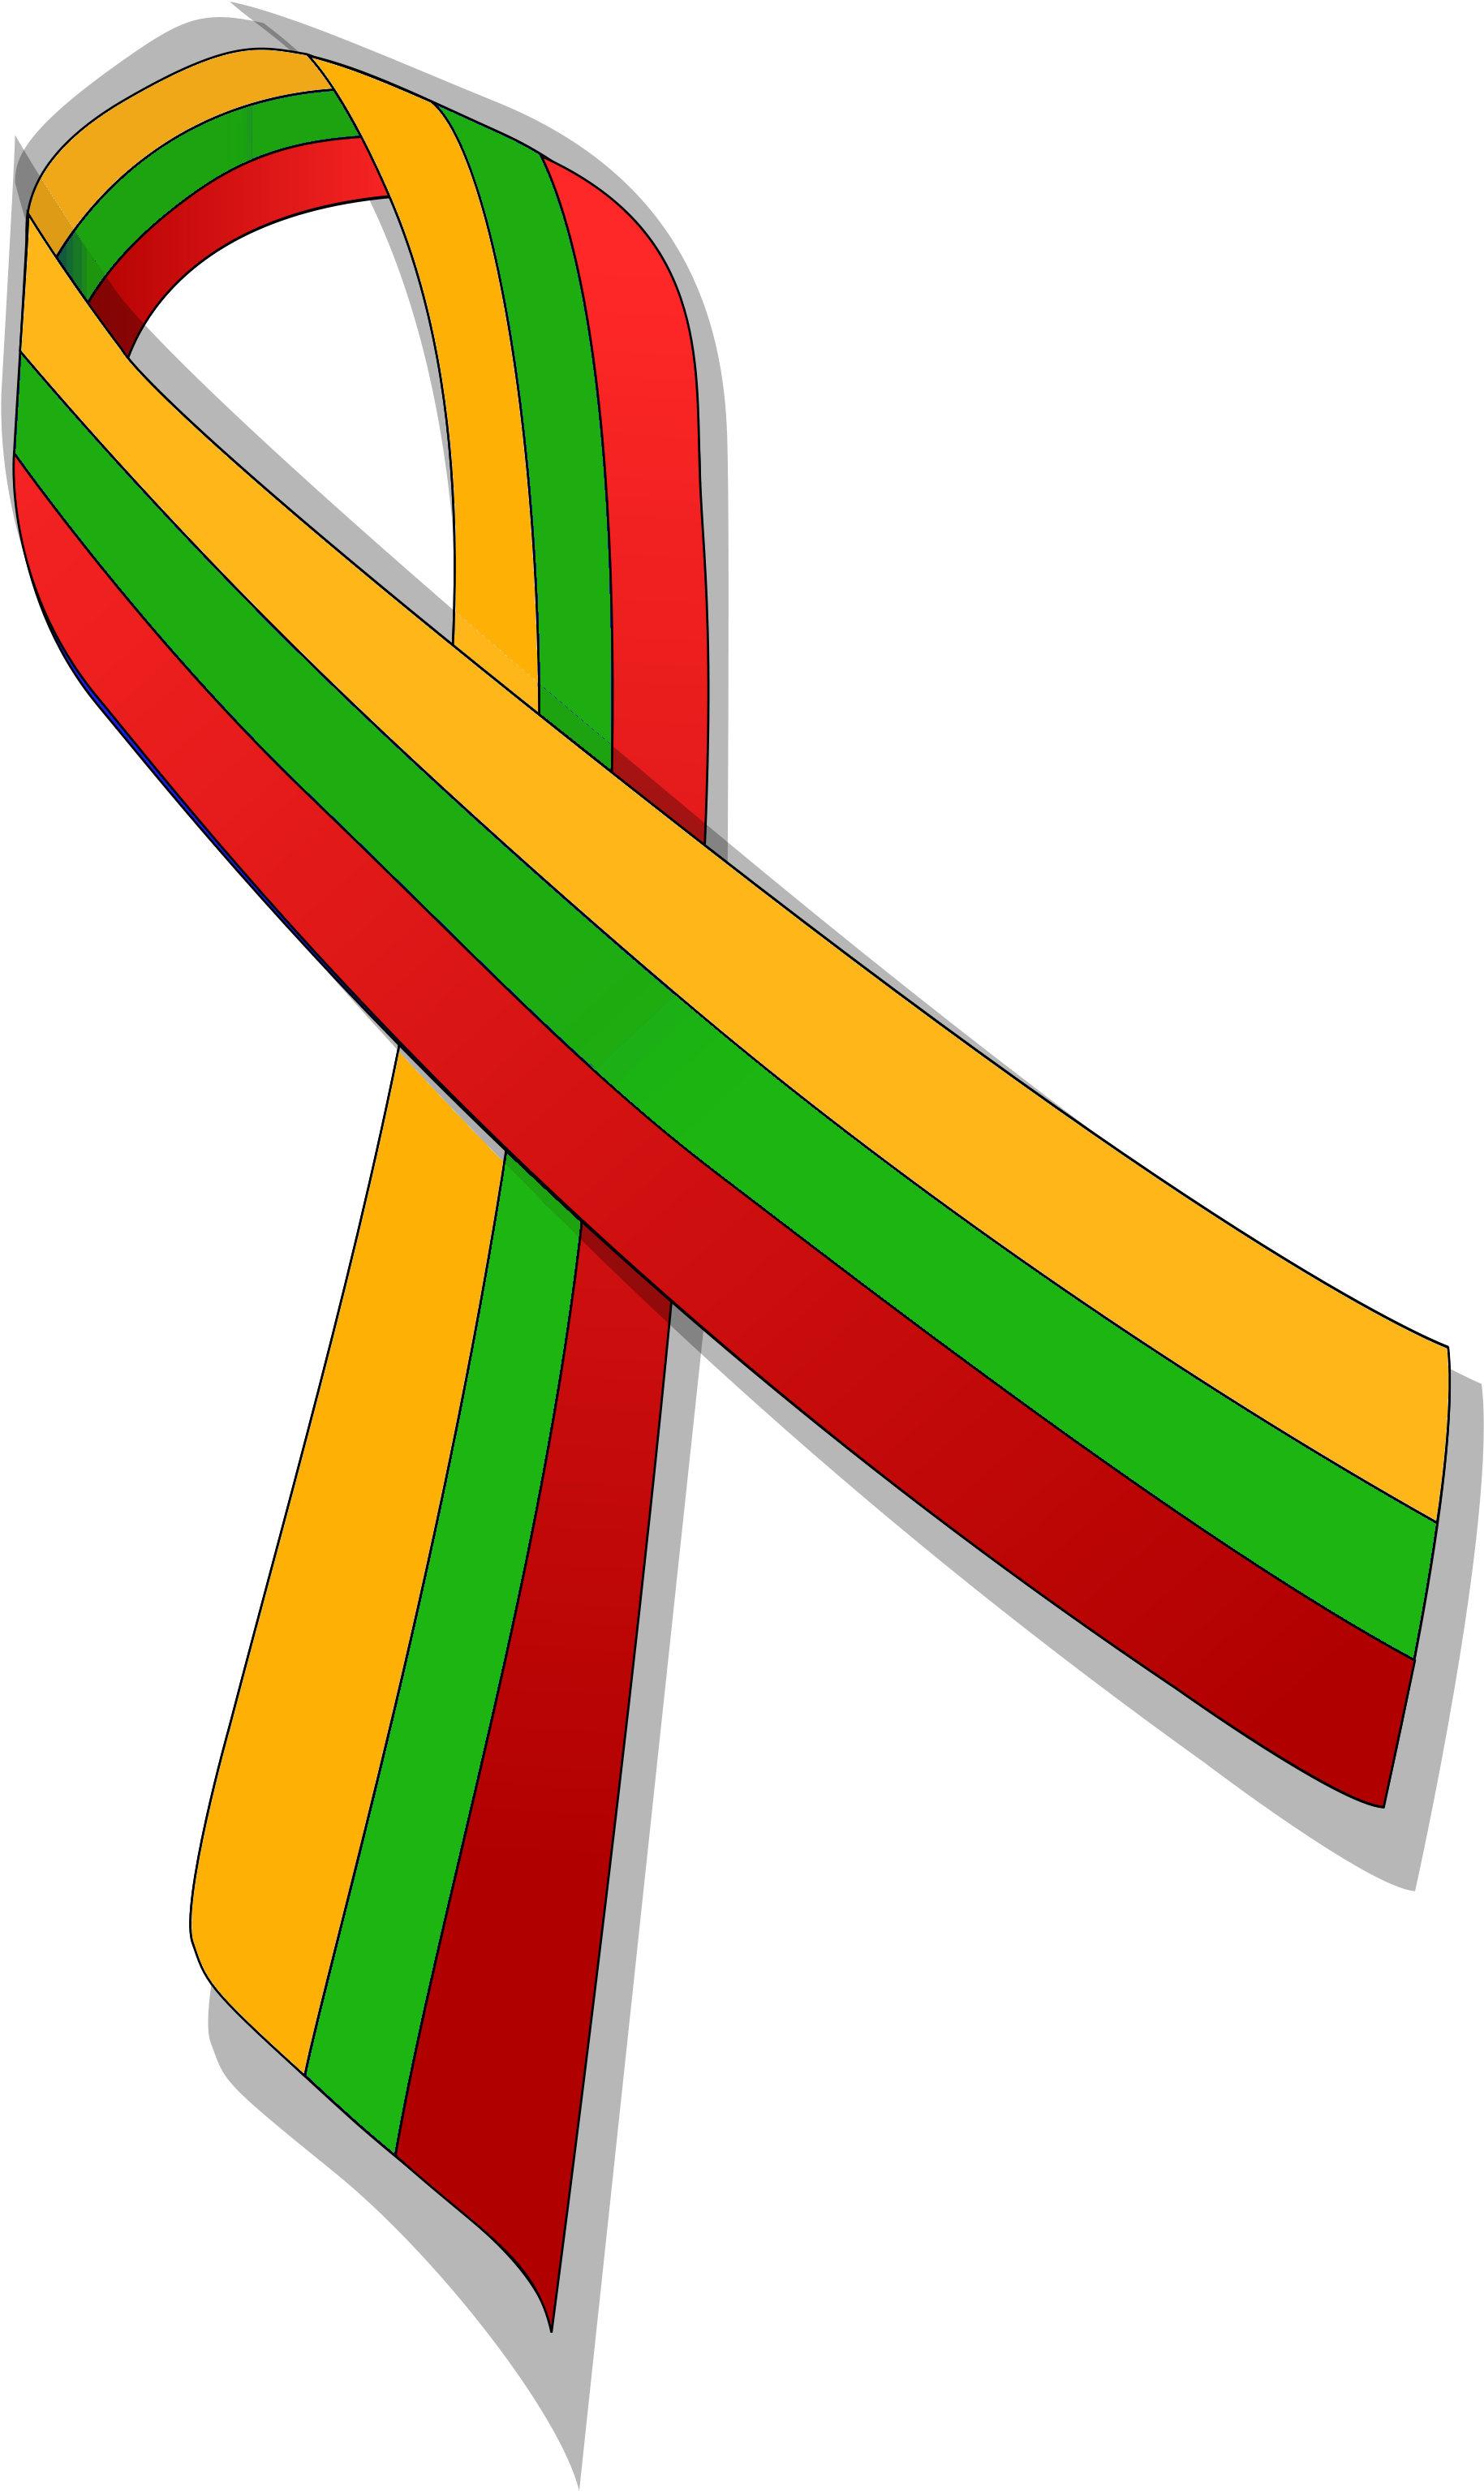 Lithuanian Ribbon Awareness